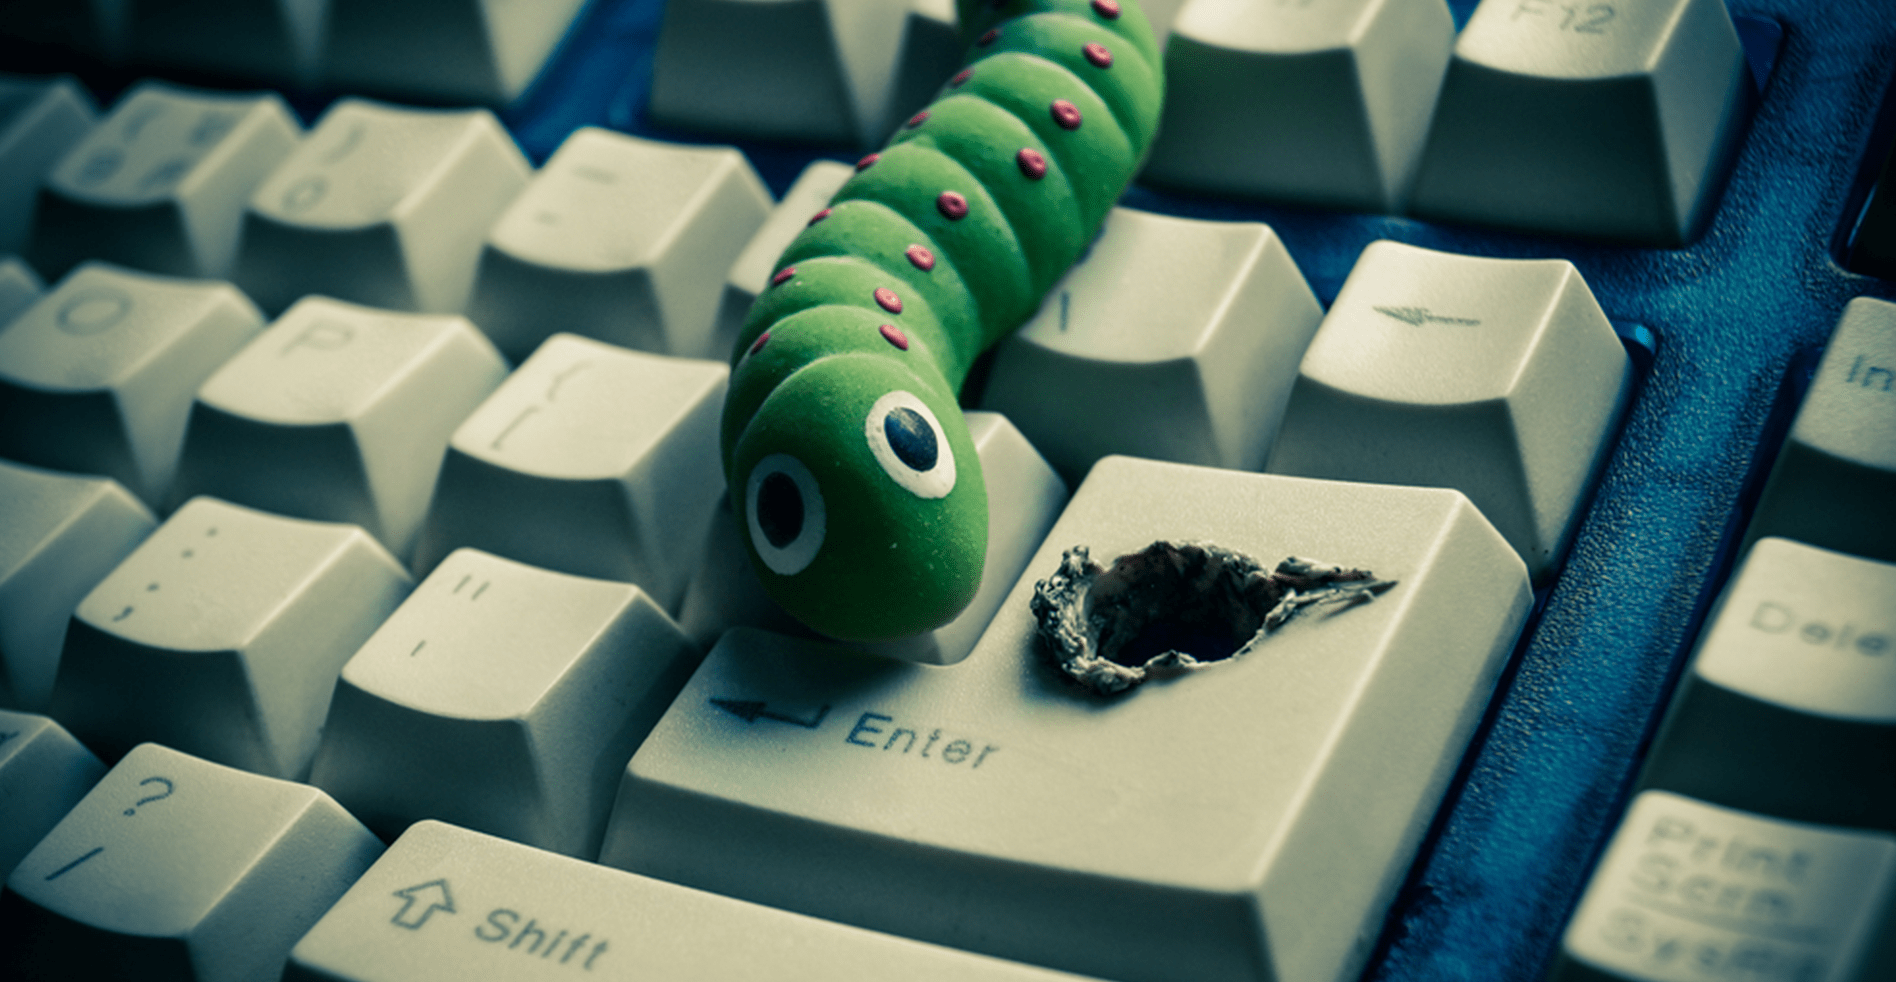 virus crawling out of keyboard